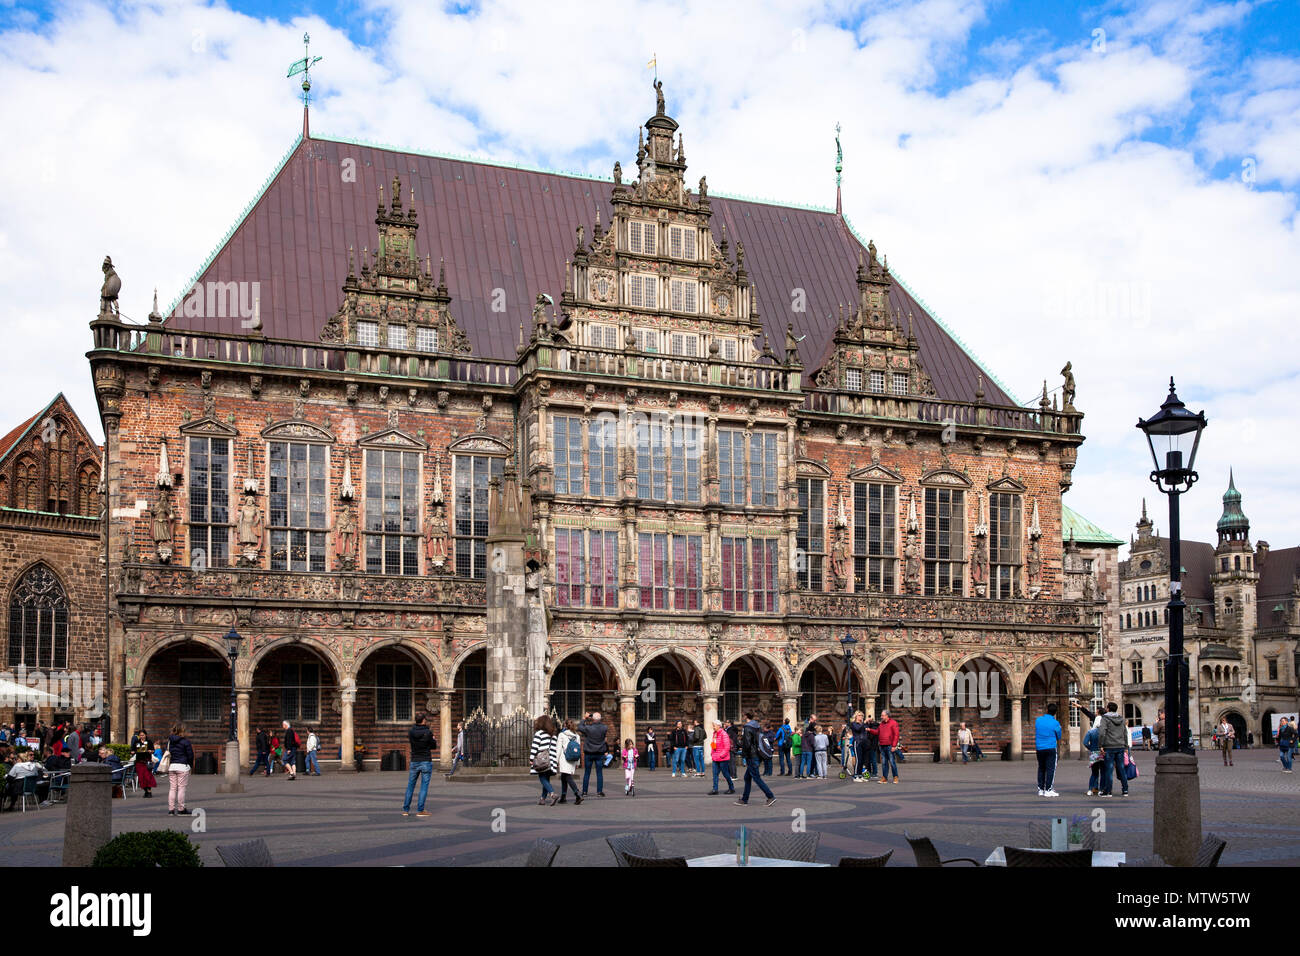 Rathaus am Marktplatz, Bremen, Deutschland. Rathaus am Marktplatz, Bremen, Deutschland. Stockfoto